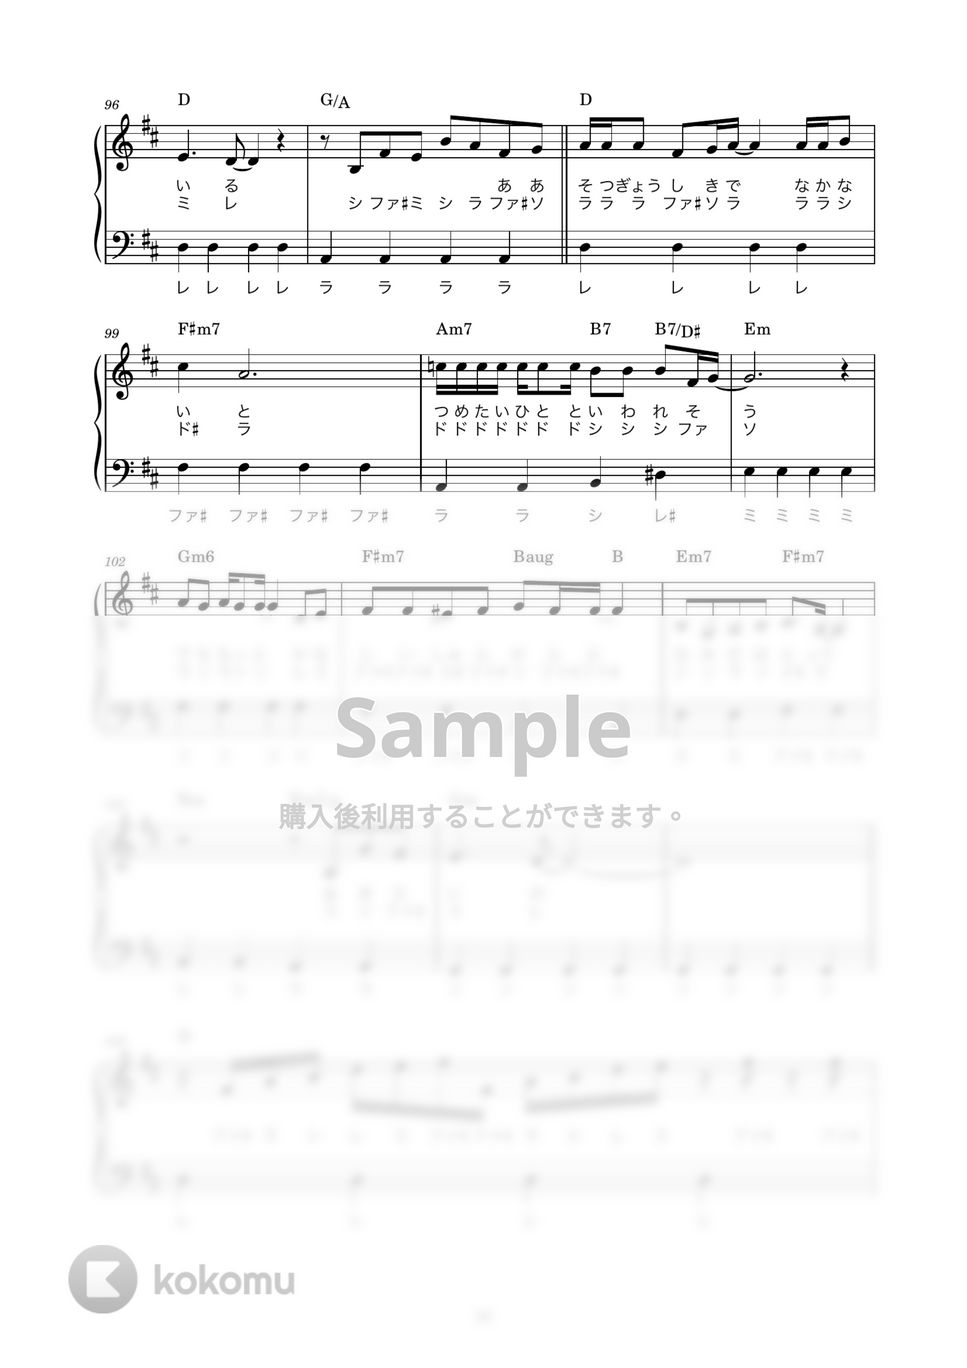 斉藤由貴 - 卒業 (かんたん / 歌詞付き / ドレミ付き / 初心者) by piano.tokyo